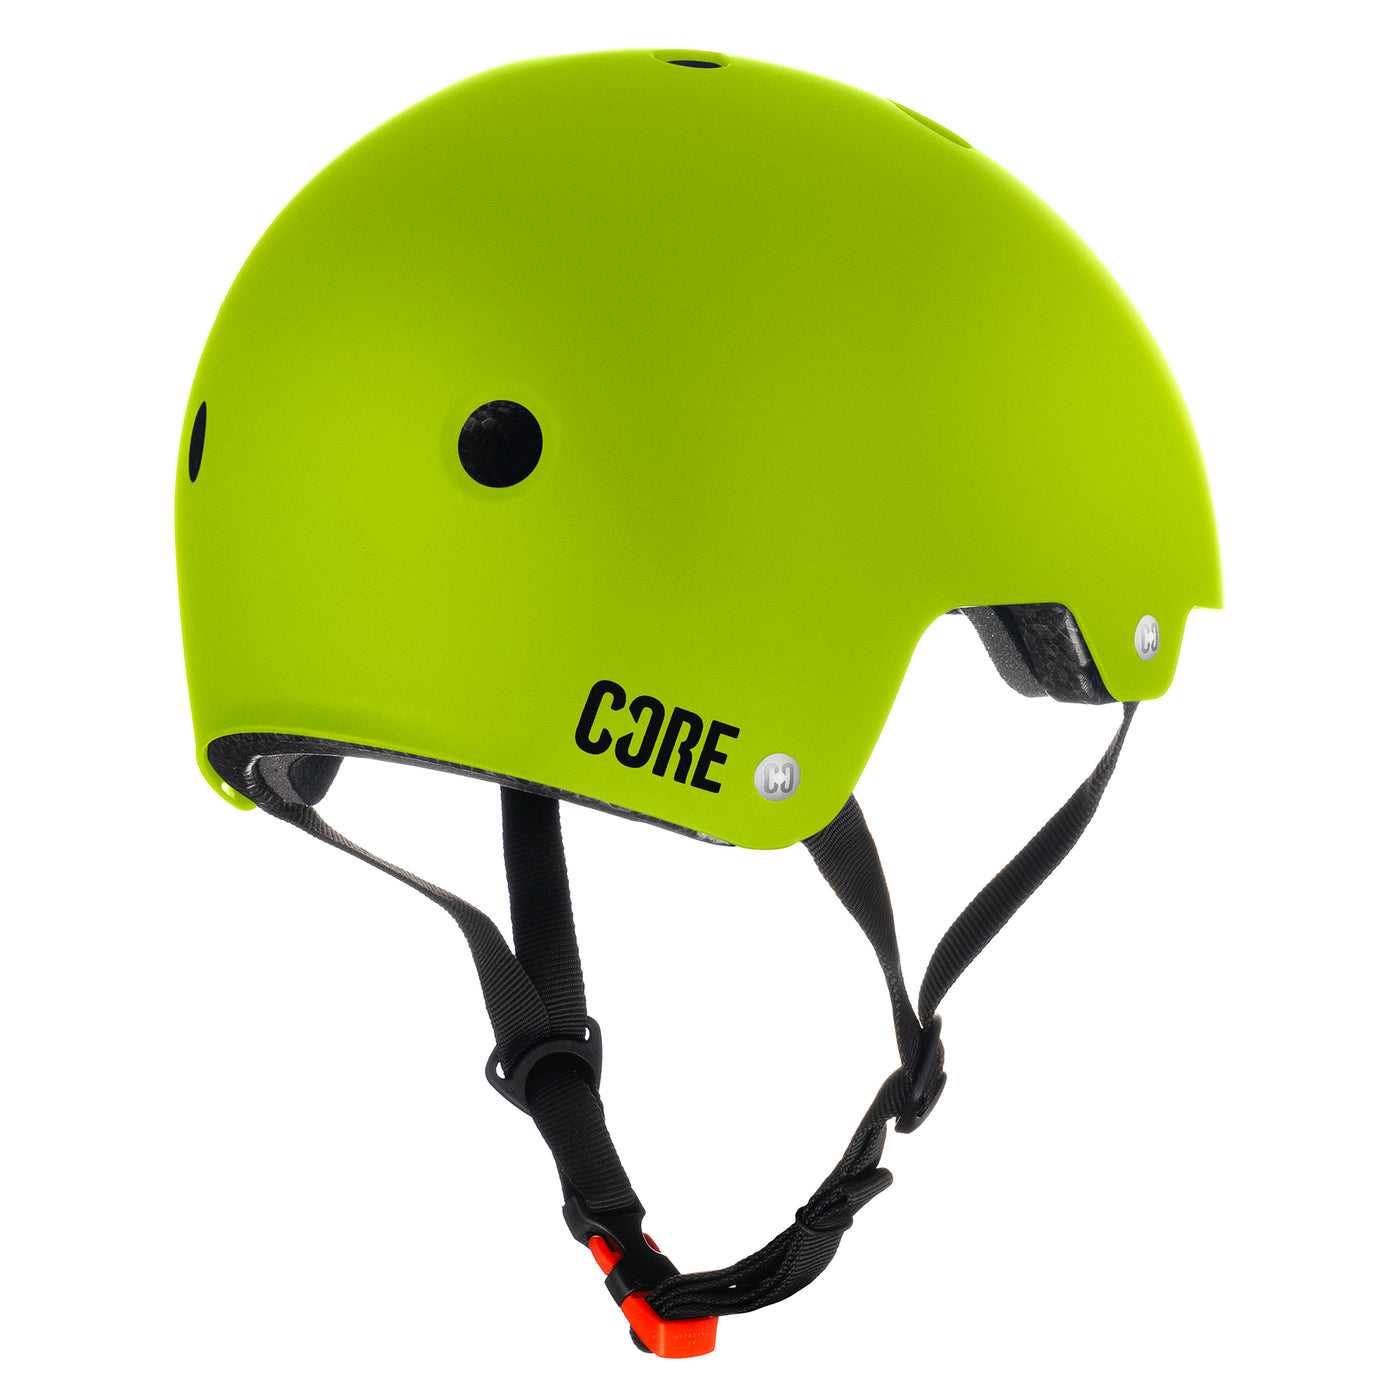 CORE Action-Sporthelm – Neongrün 